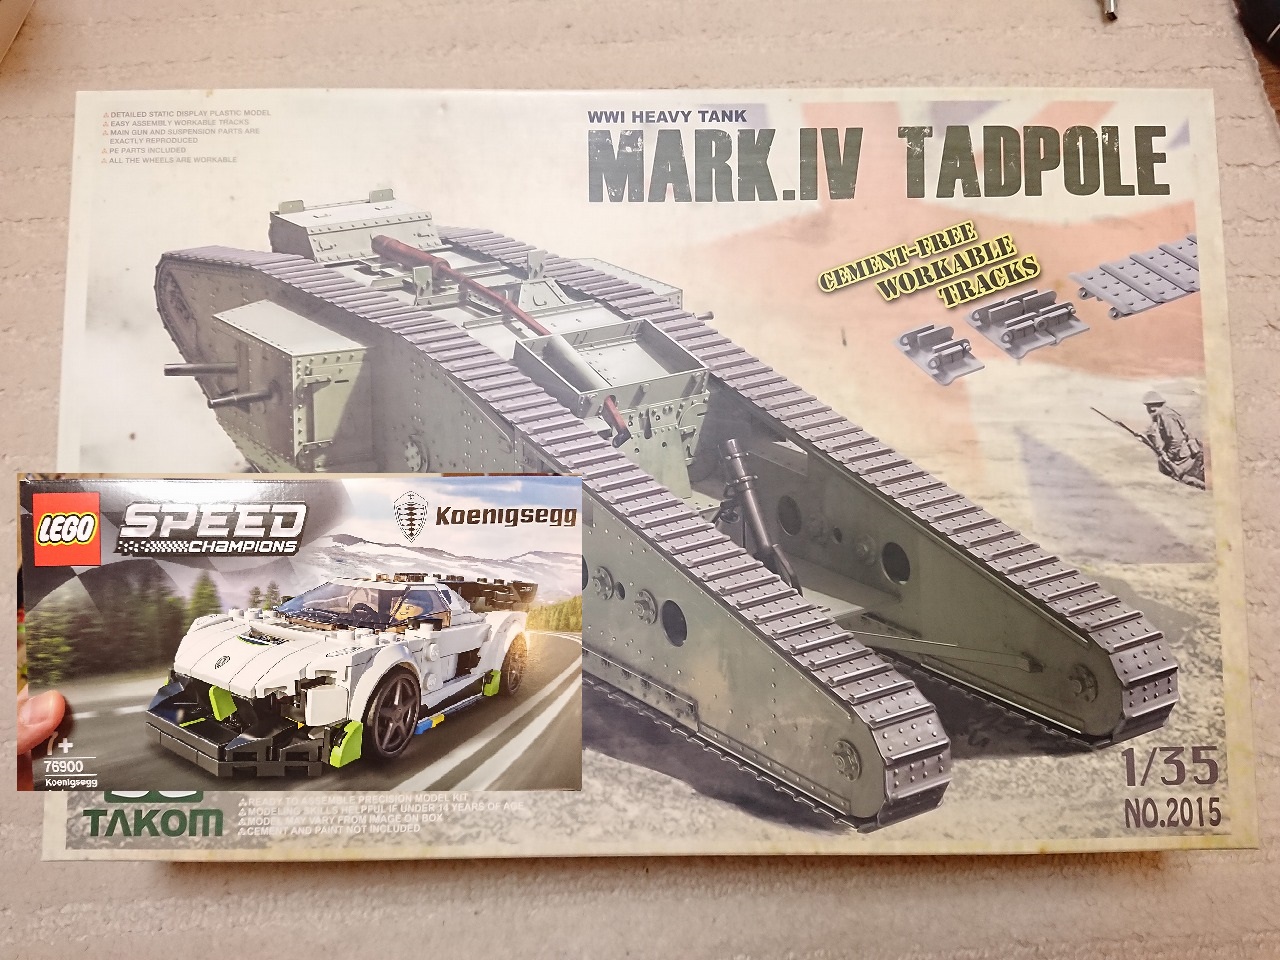 【最近購入した物】TAKOM マークIV メール タッドポールとレゴ(LEGO) スピードチャンピオン ケーニグセグ ジェスコ